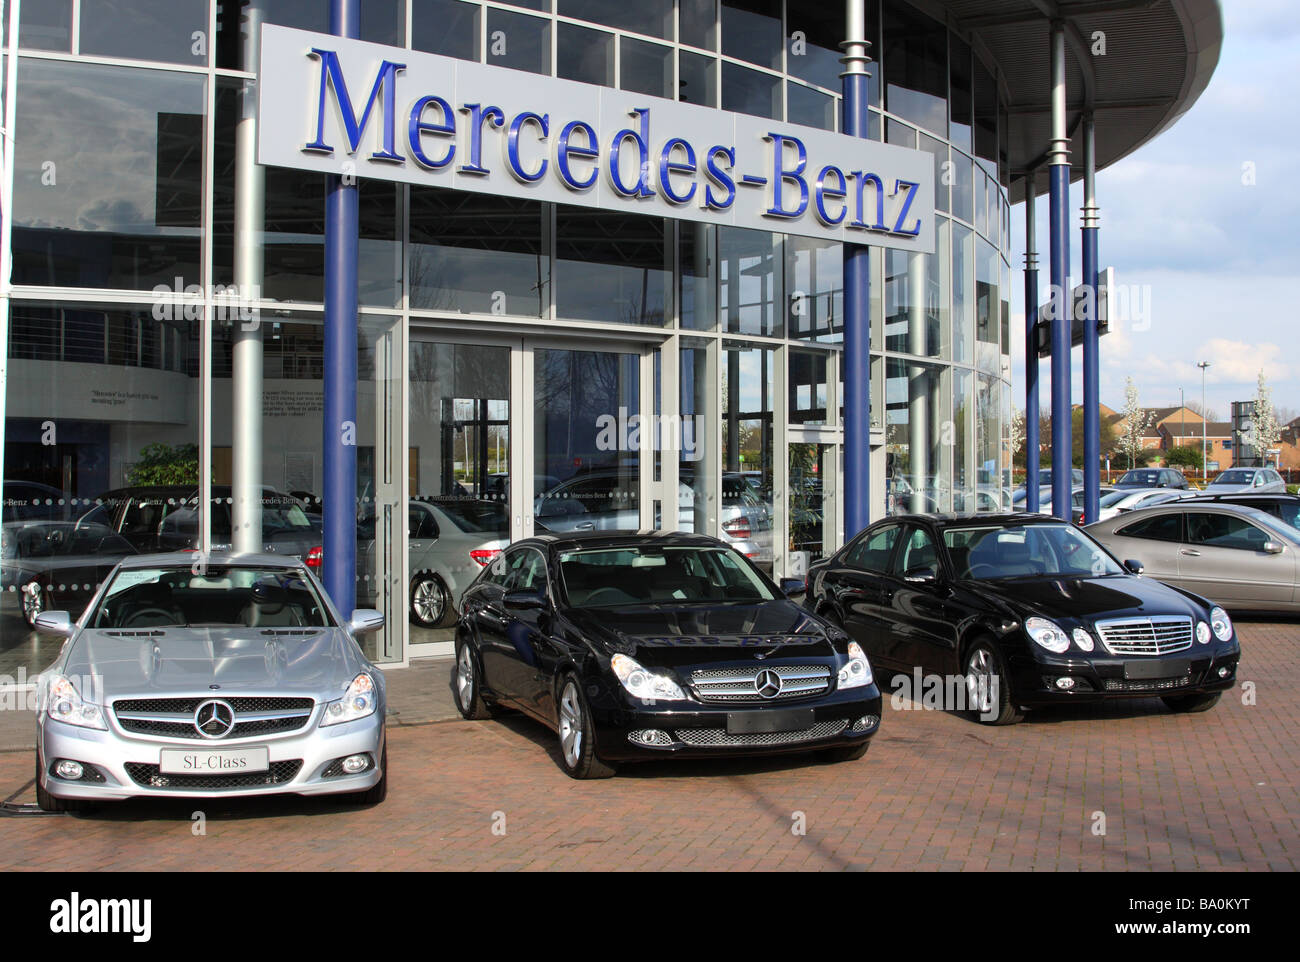 Ein Mercedes-Benz Händler in einer Stadt, U.K. Stockfoto